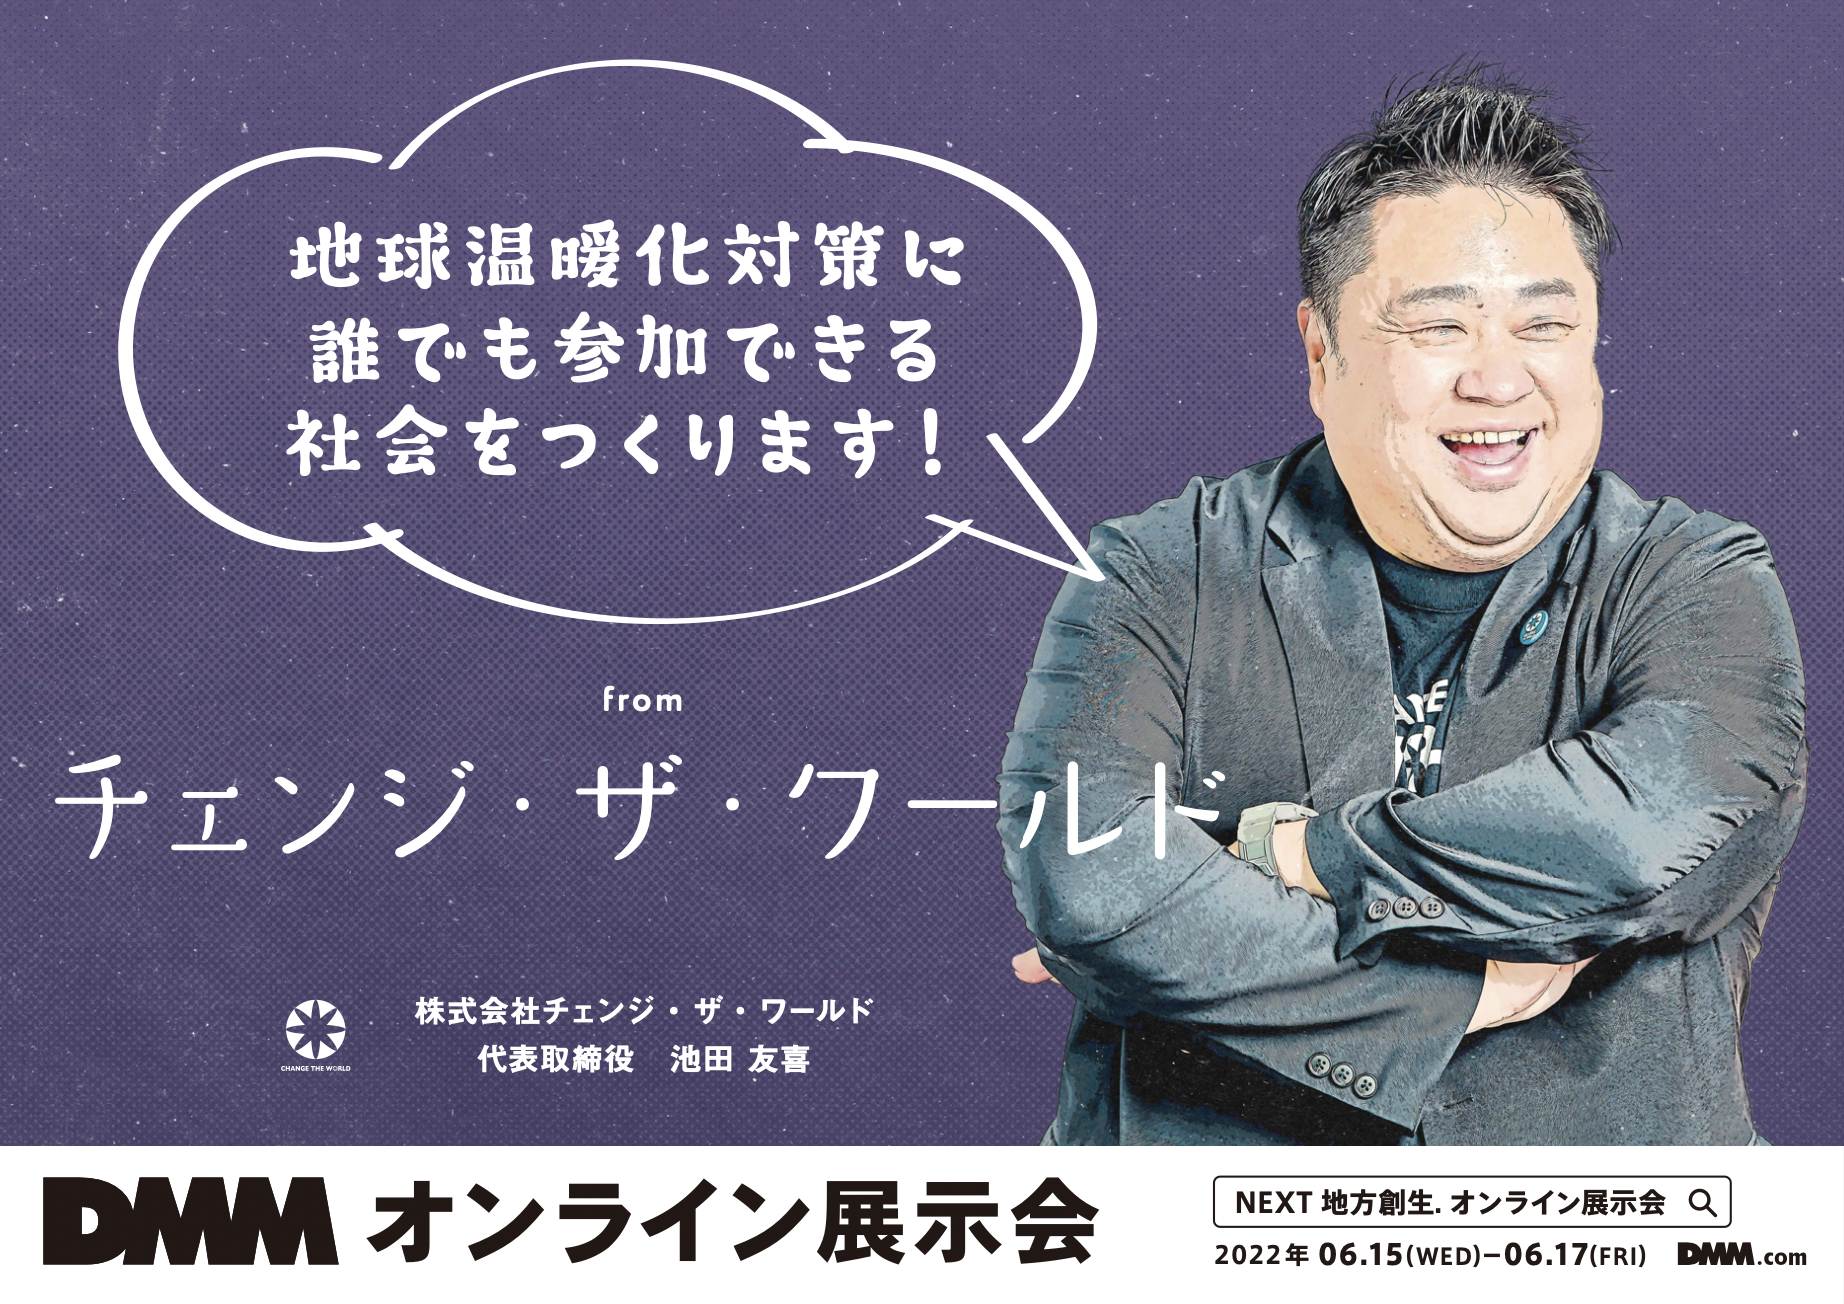 東京駅に参上！DMM主催 地方創生をテーマにした共創型広告に弊社代表 池田が参加いたします